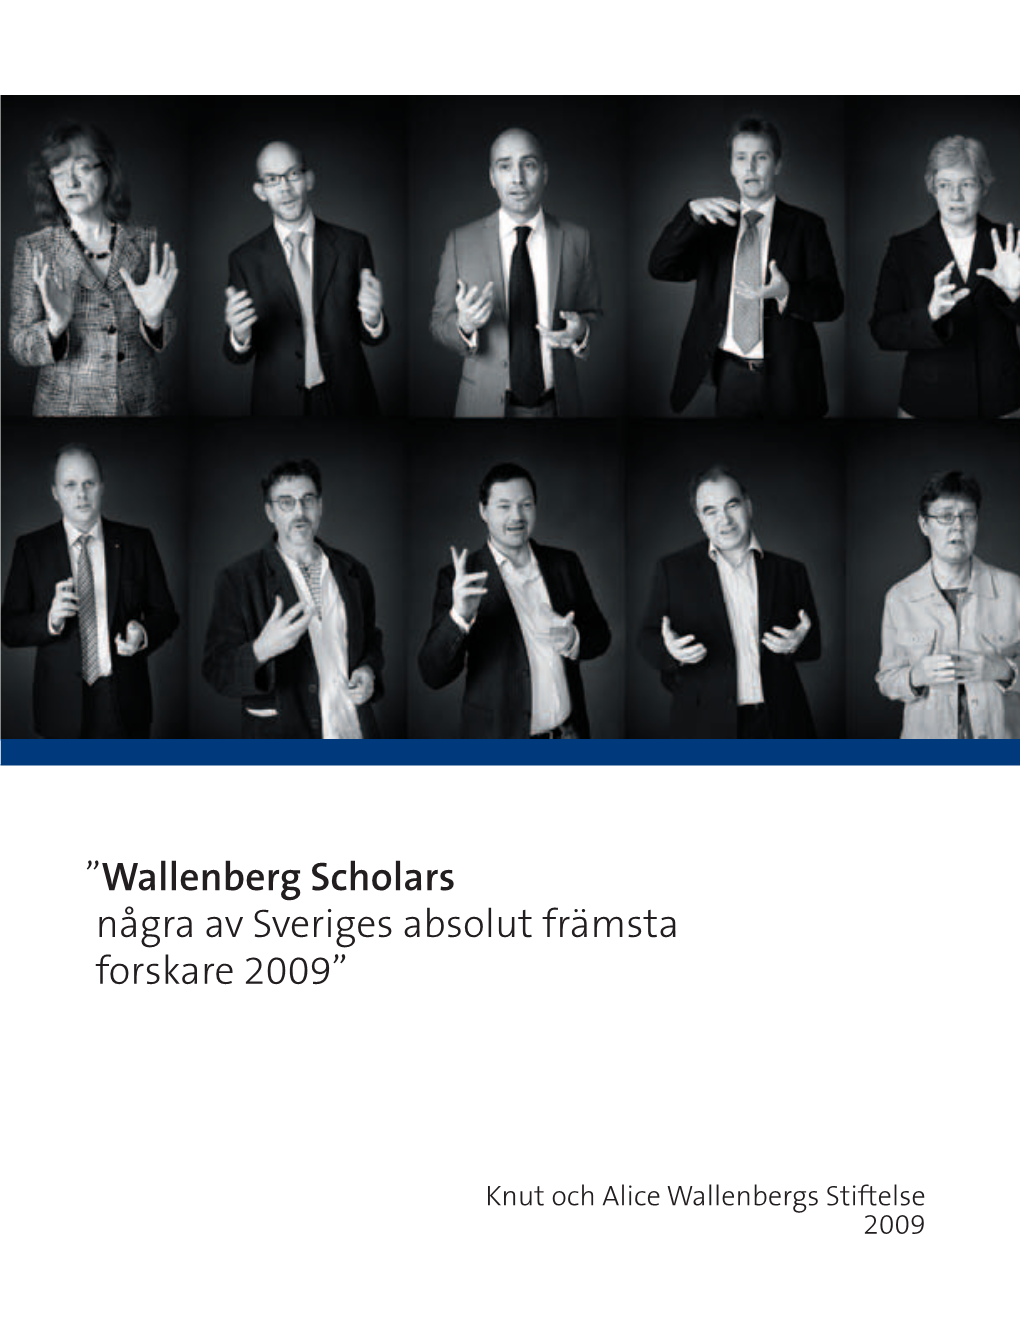 Wallenberg Scholars Några Av Sveriges Absolut Främsta Forskare 2009”